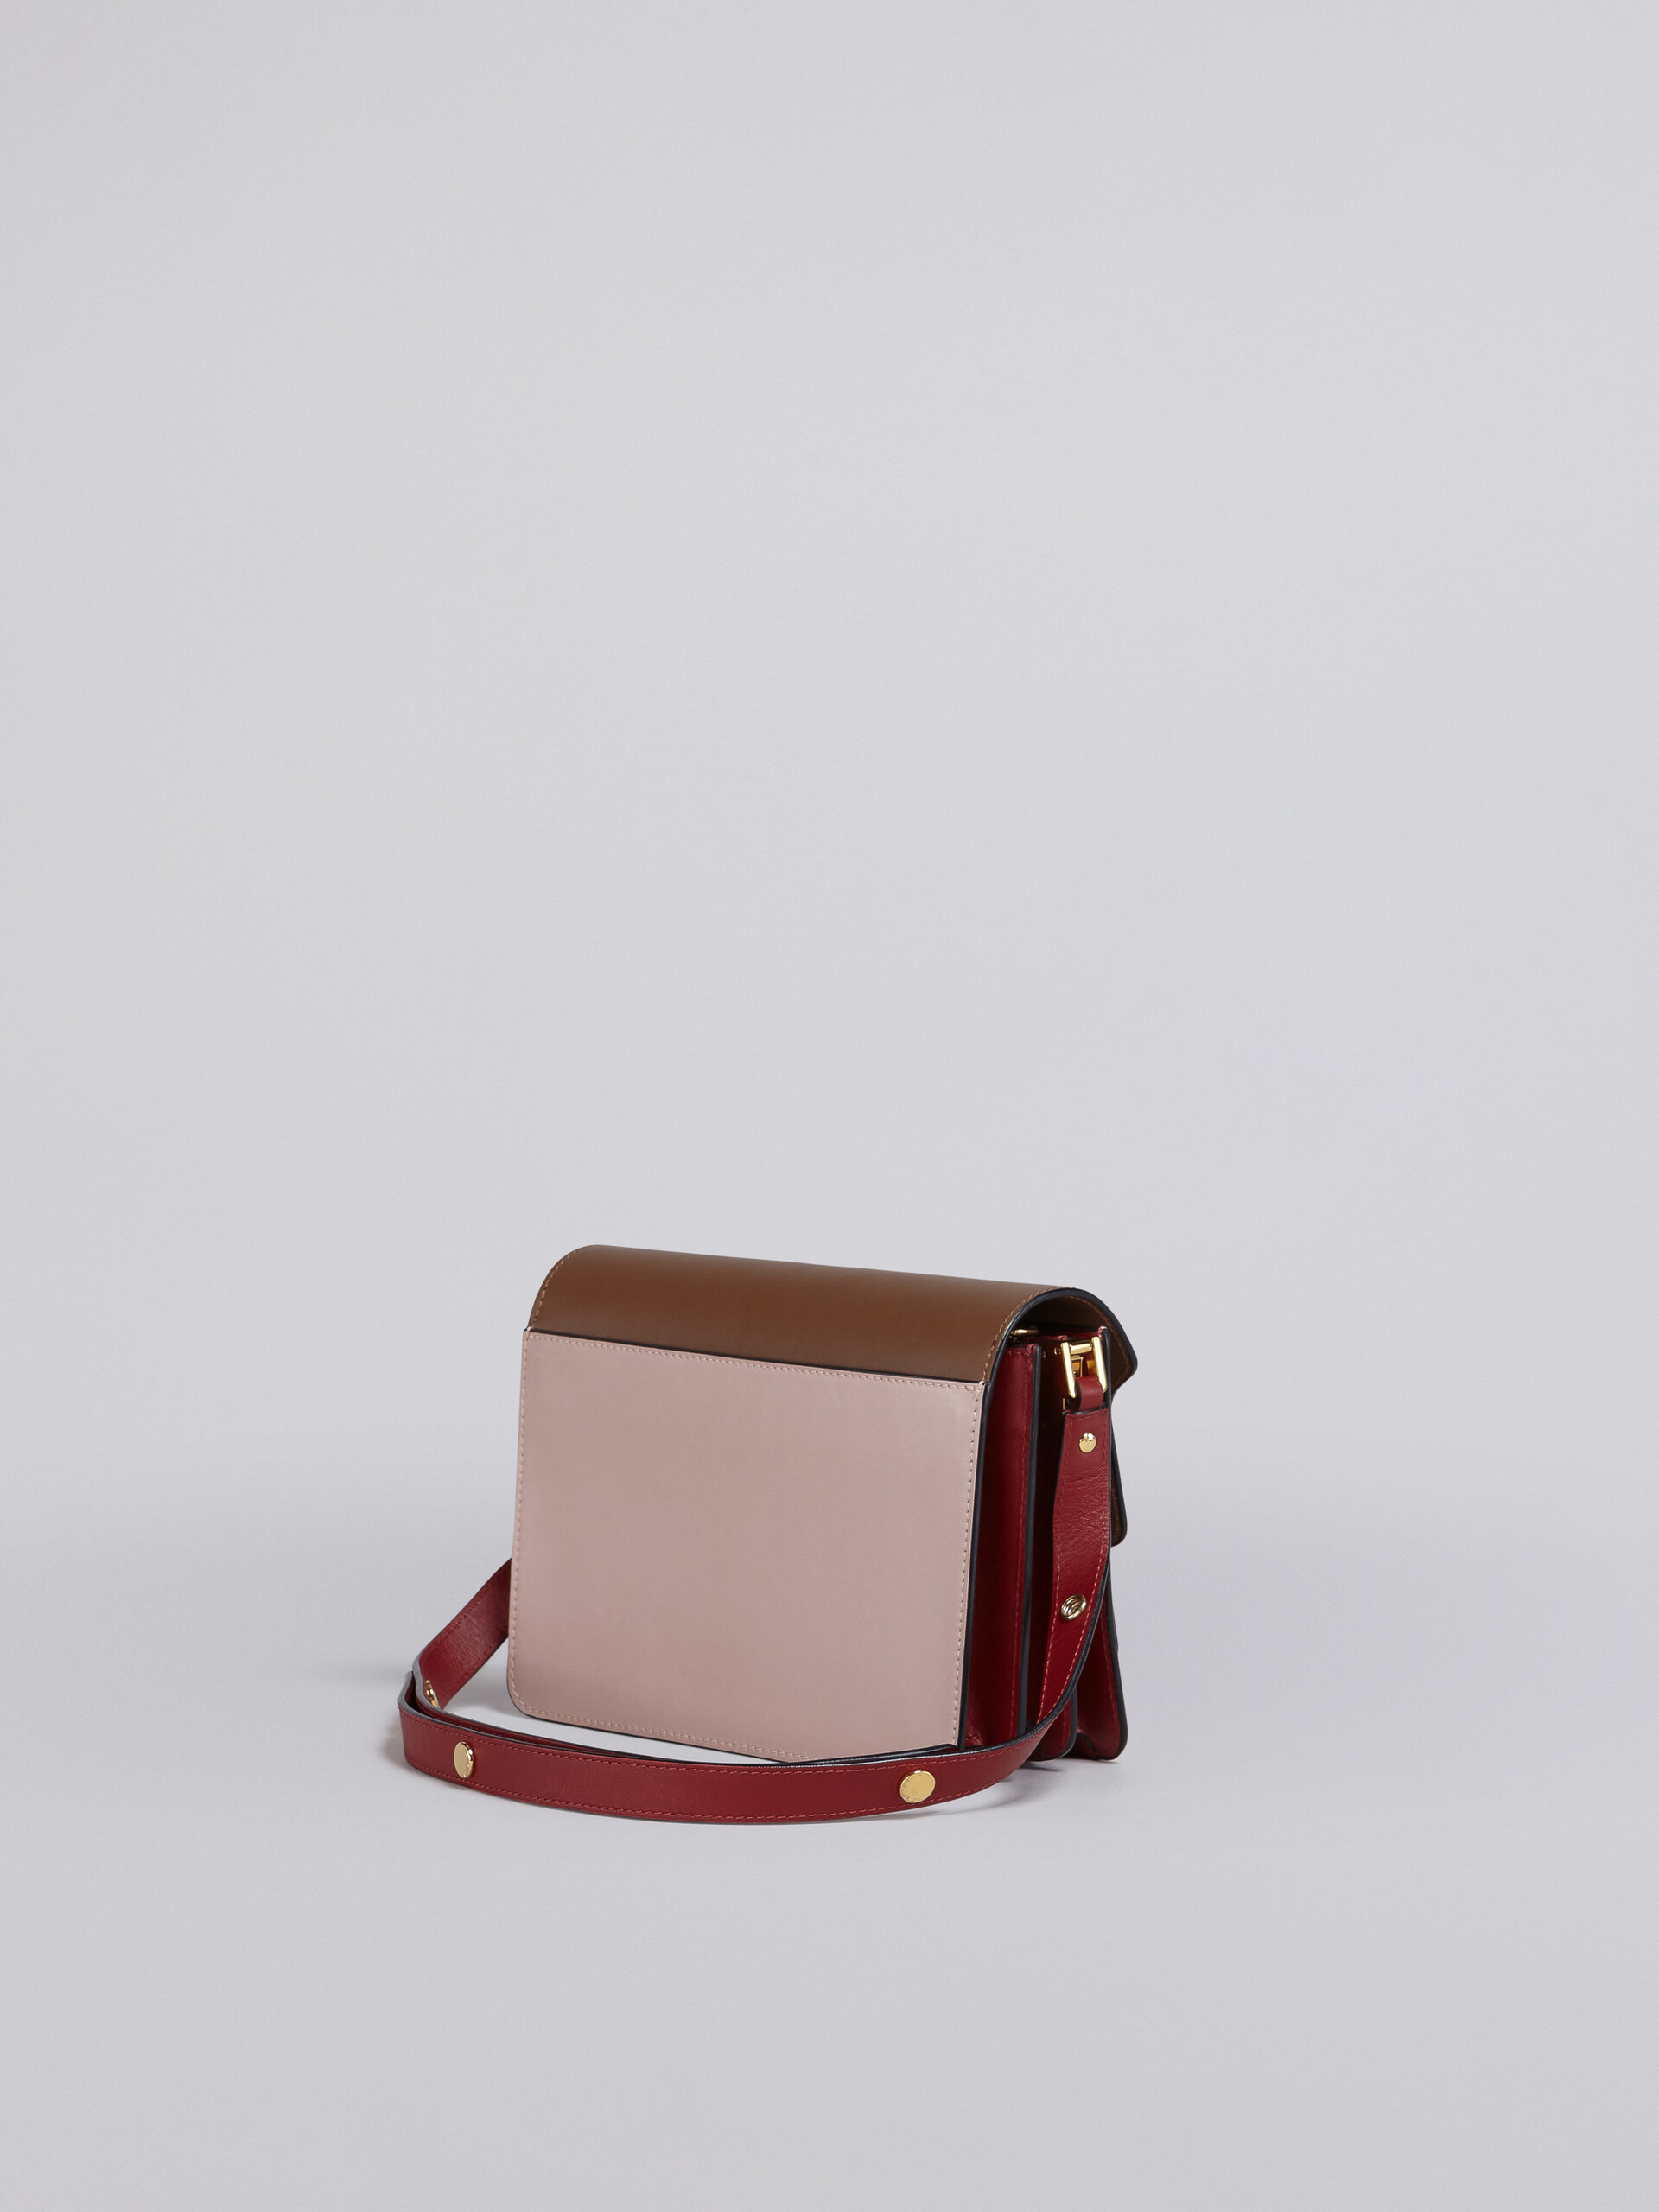 Bolso TRUNK de piel marrón rosa y roja - Bolsos de hombro - Image 2